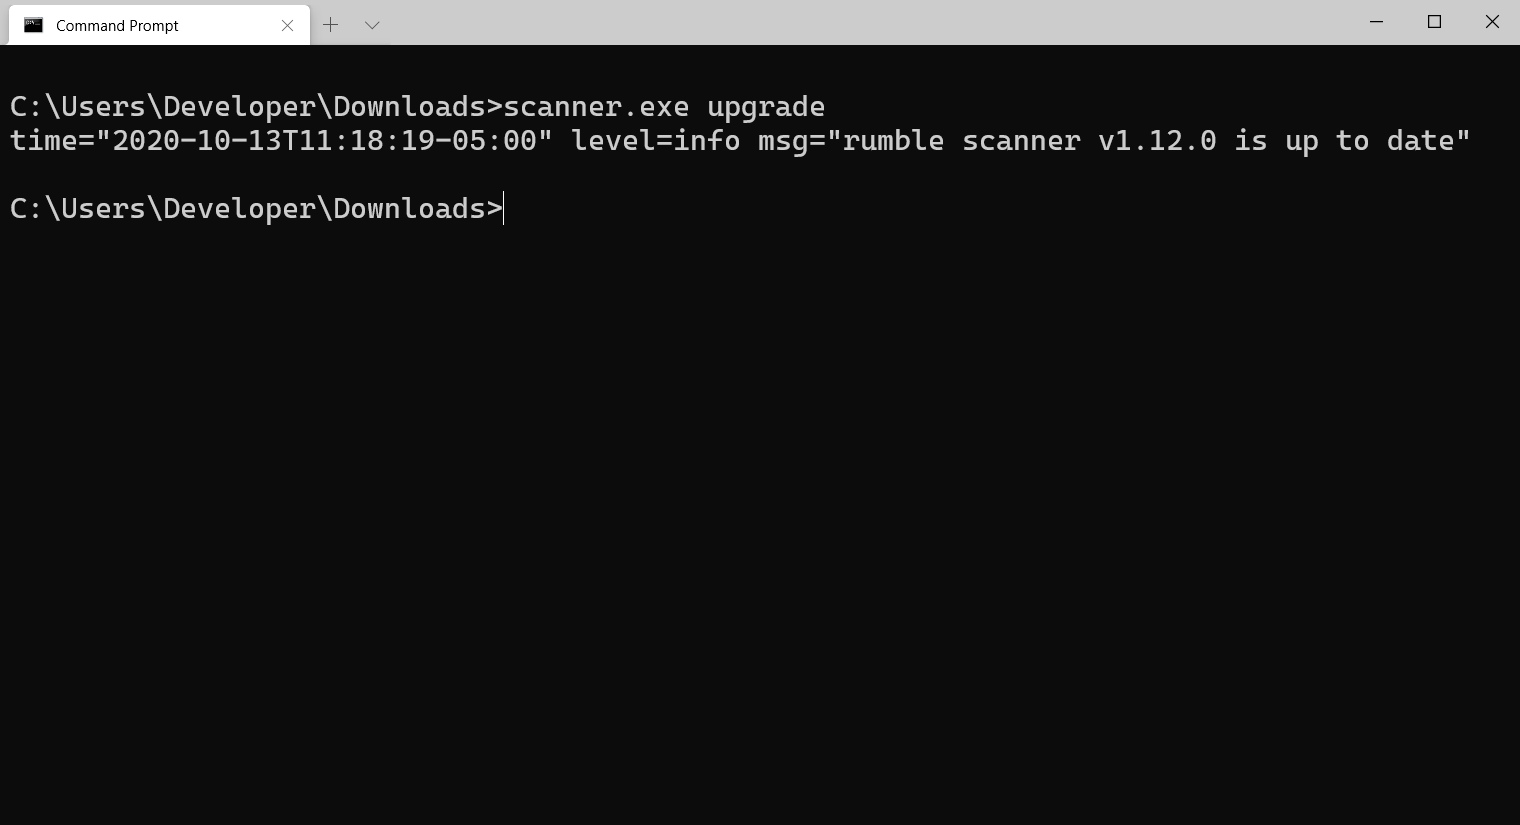 Screenshot of Rumble Scanner Upgrade